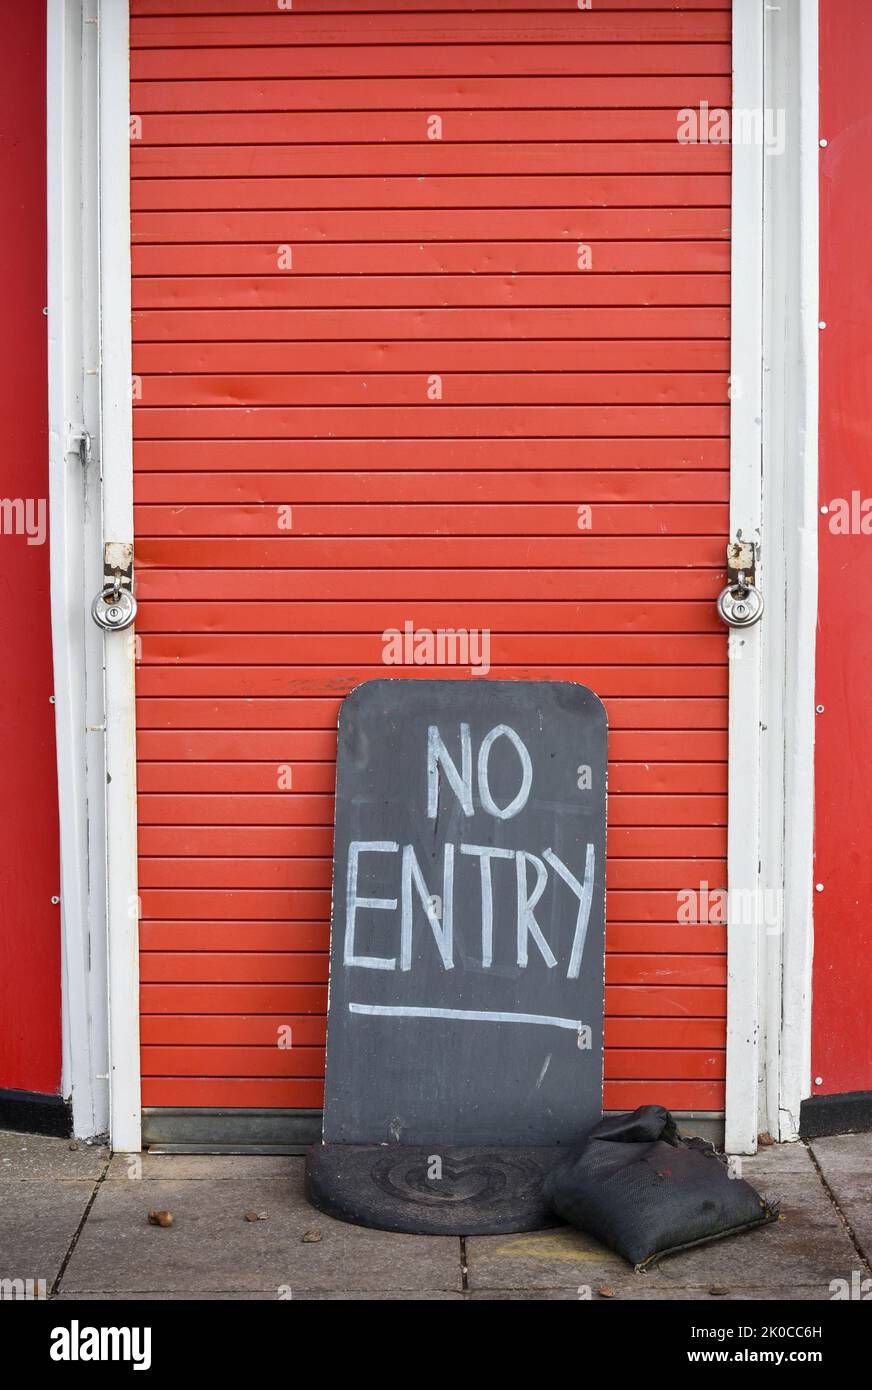 Non è stata scritta alcuna voce su una lavagna nera di fronte a una porta rossa luminosa. Foto Stock